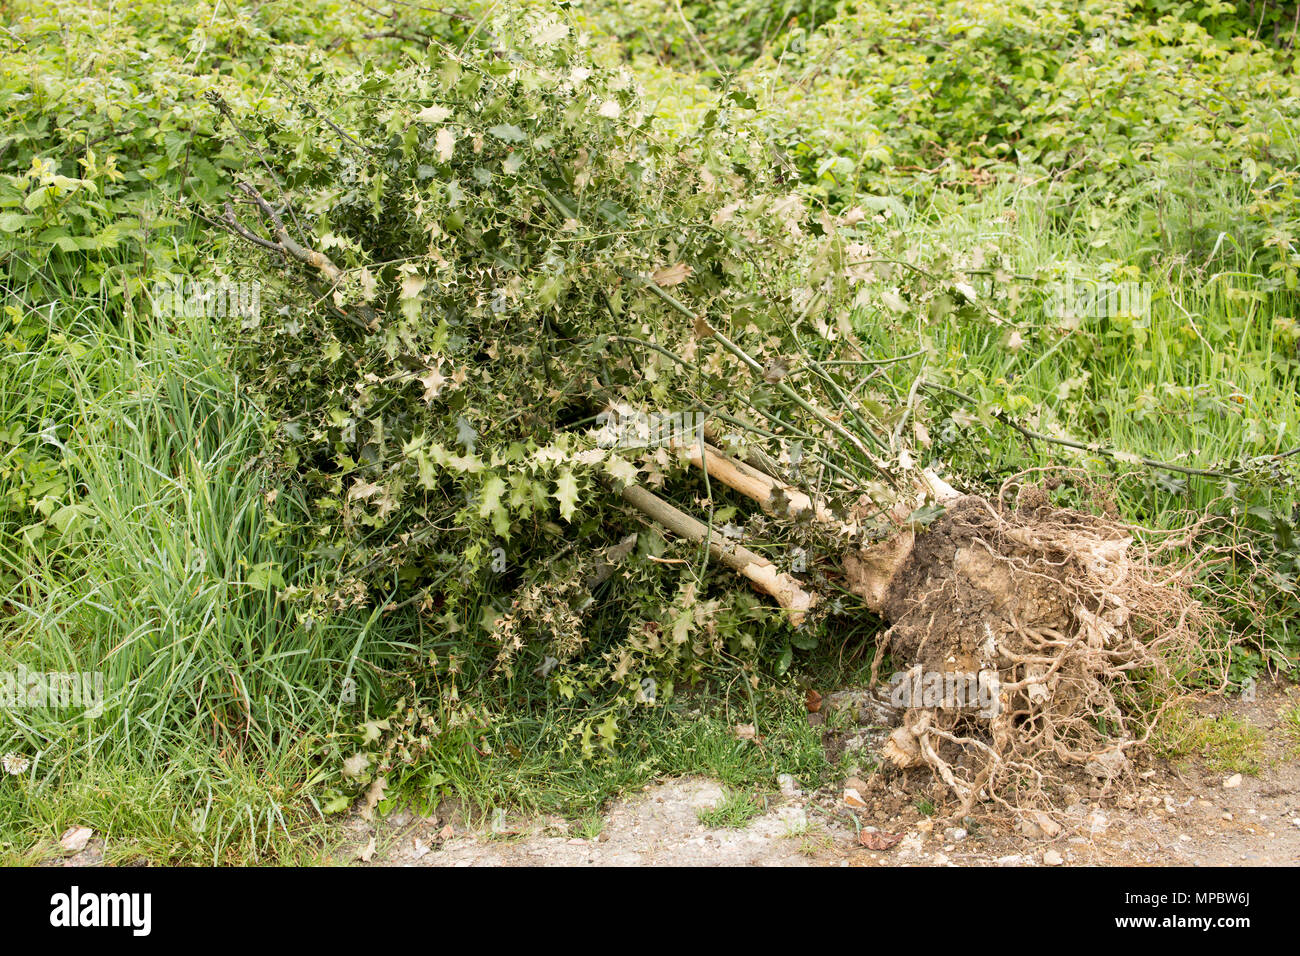 Un déraciné de holly tree, ou holly bush, Ilex aquifolium, abandonnés dans une aire dans le Dorset England UK GB. Banque D'Images